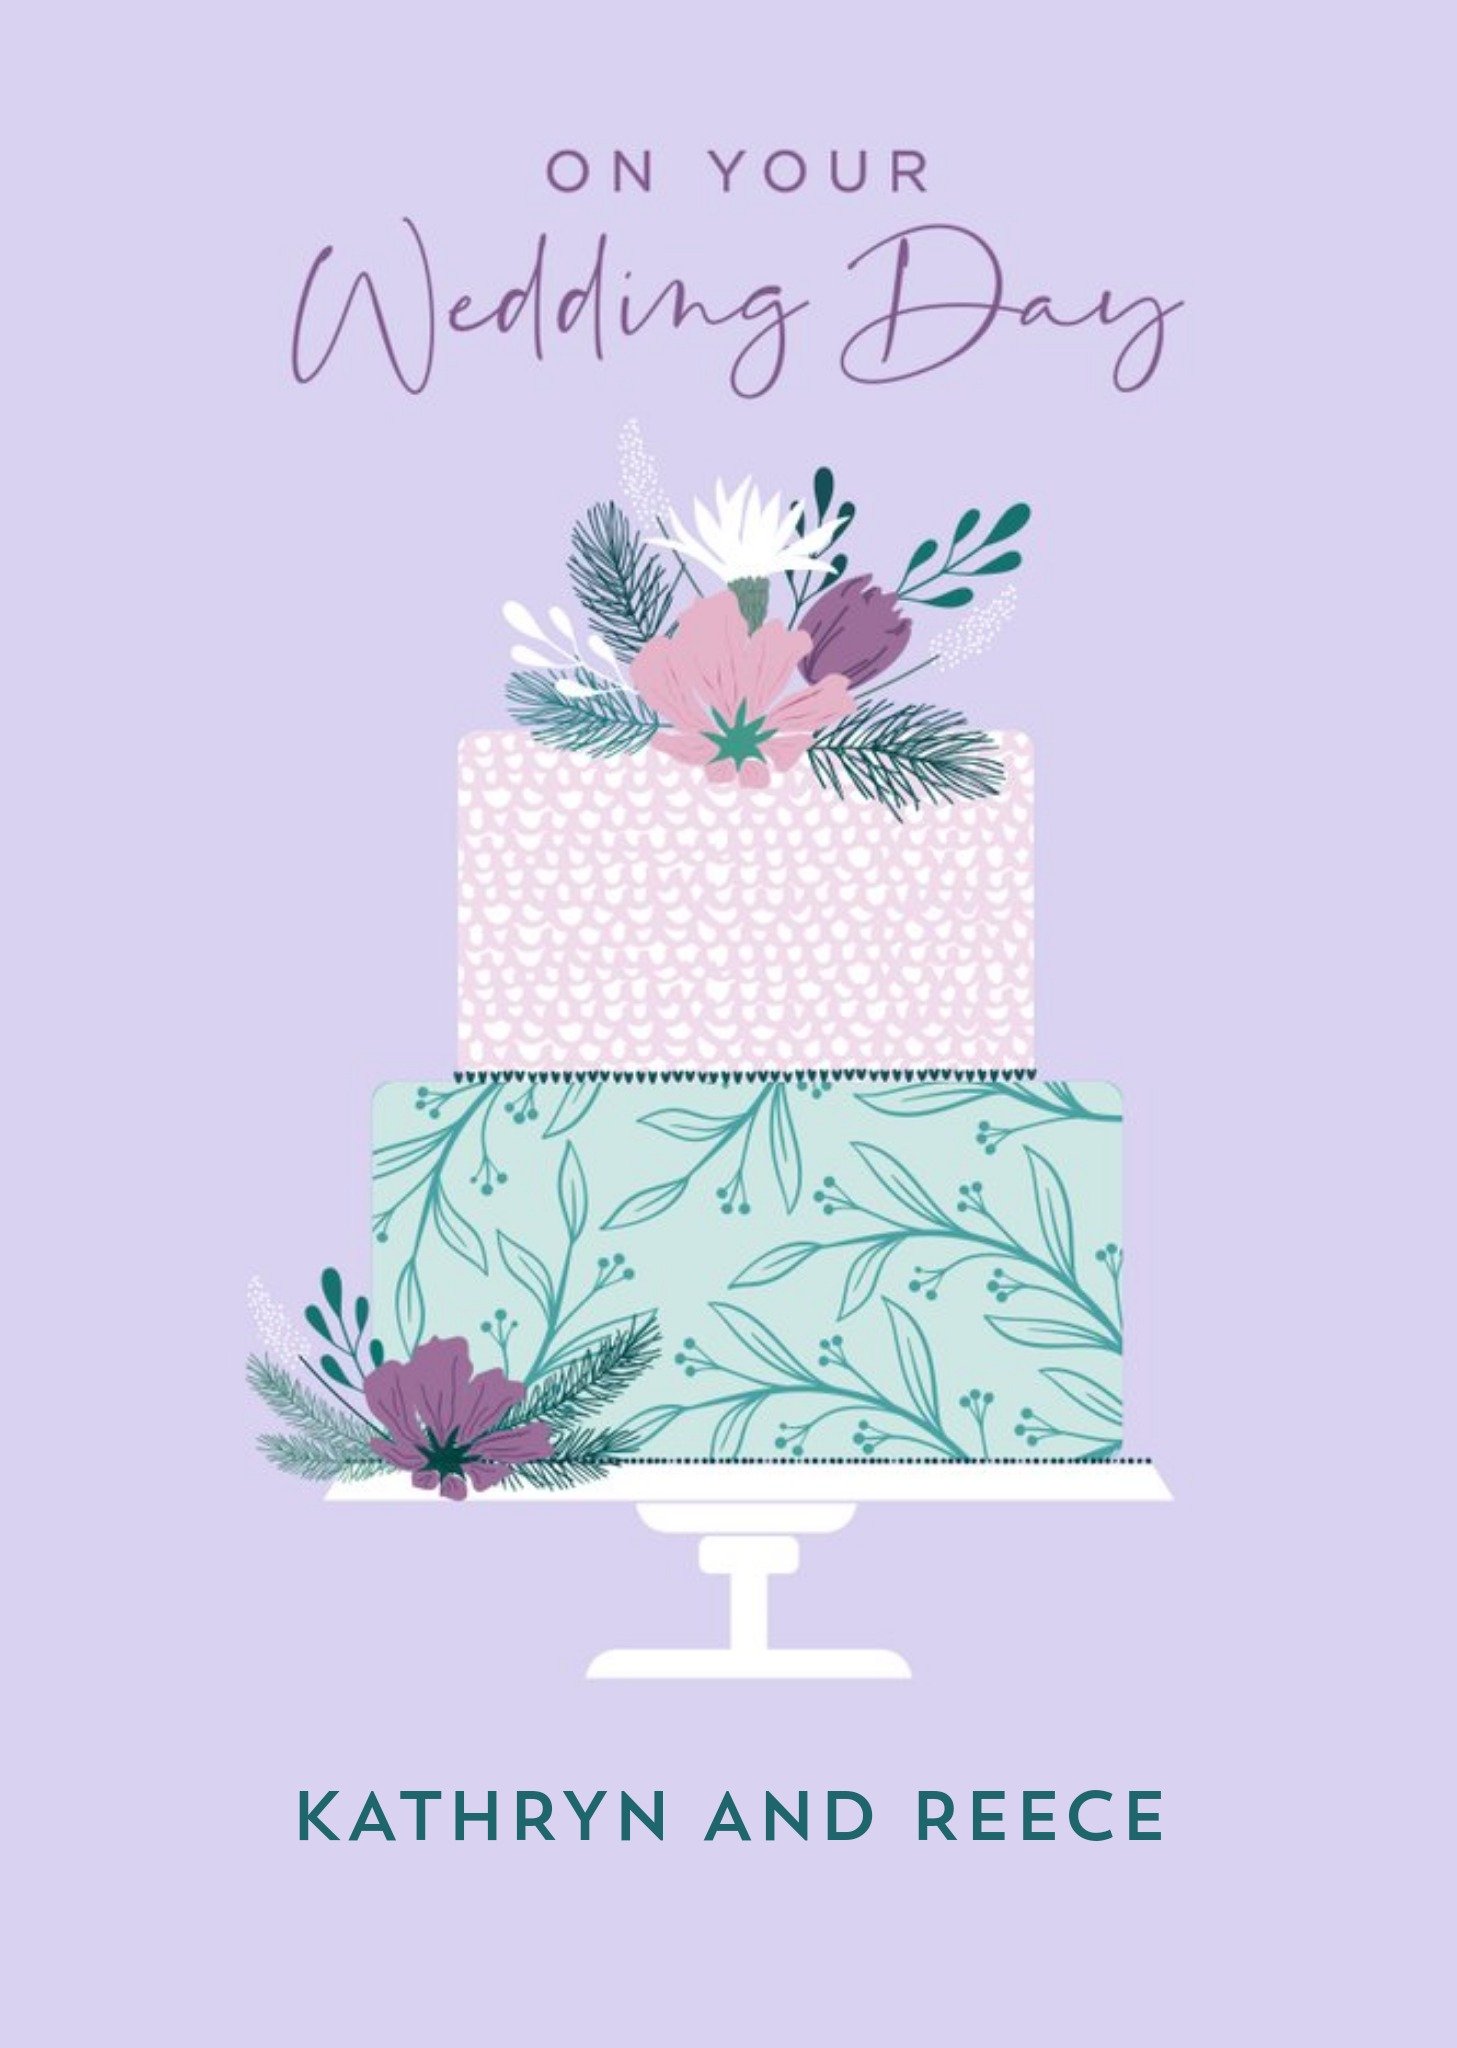 Moonpig Pretty Illustration Of Wedding Cake Wedding Card Ecard